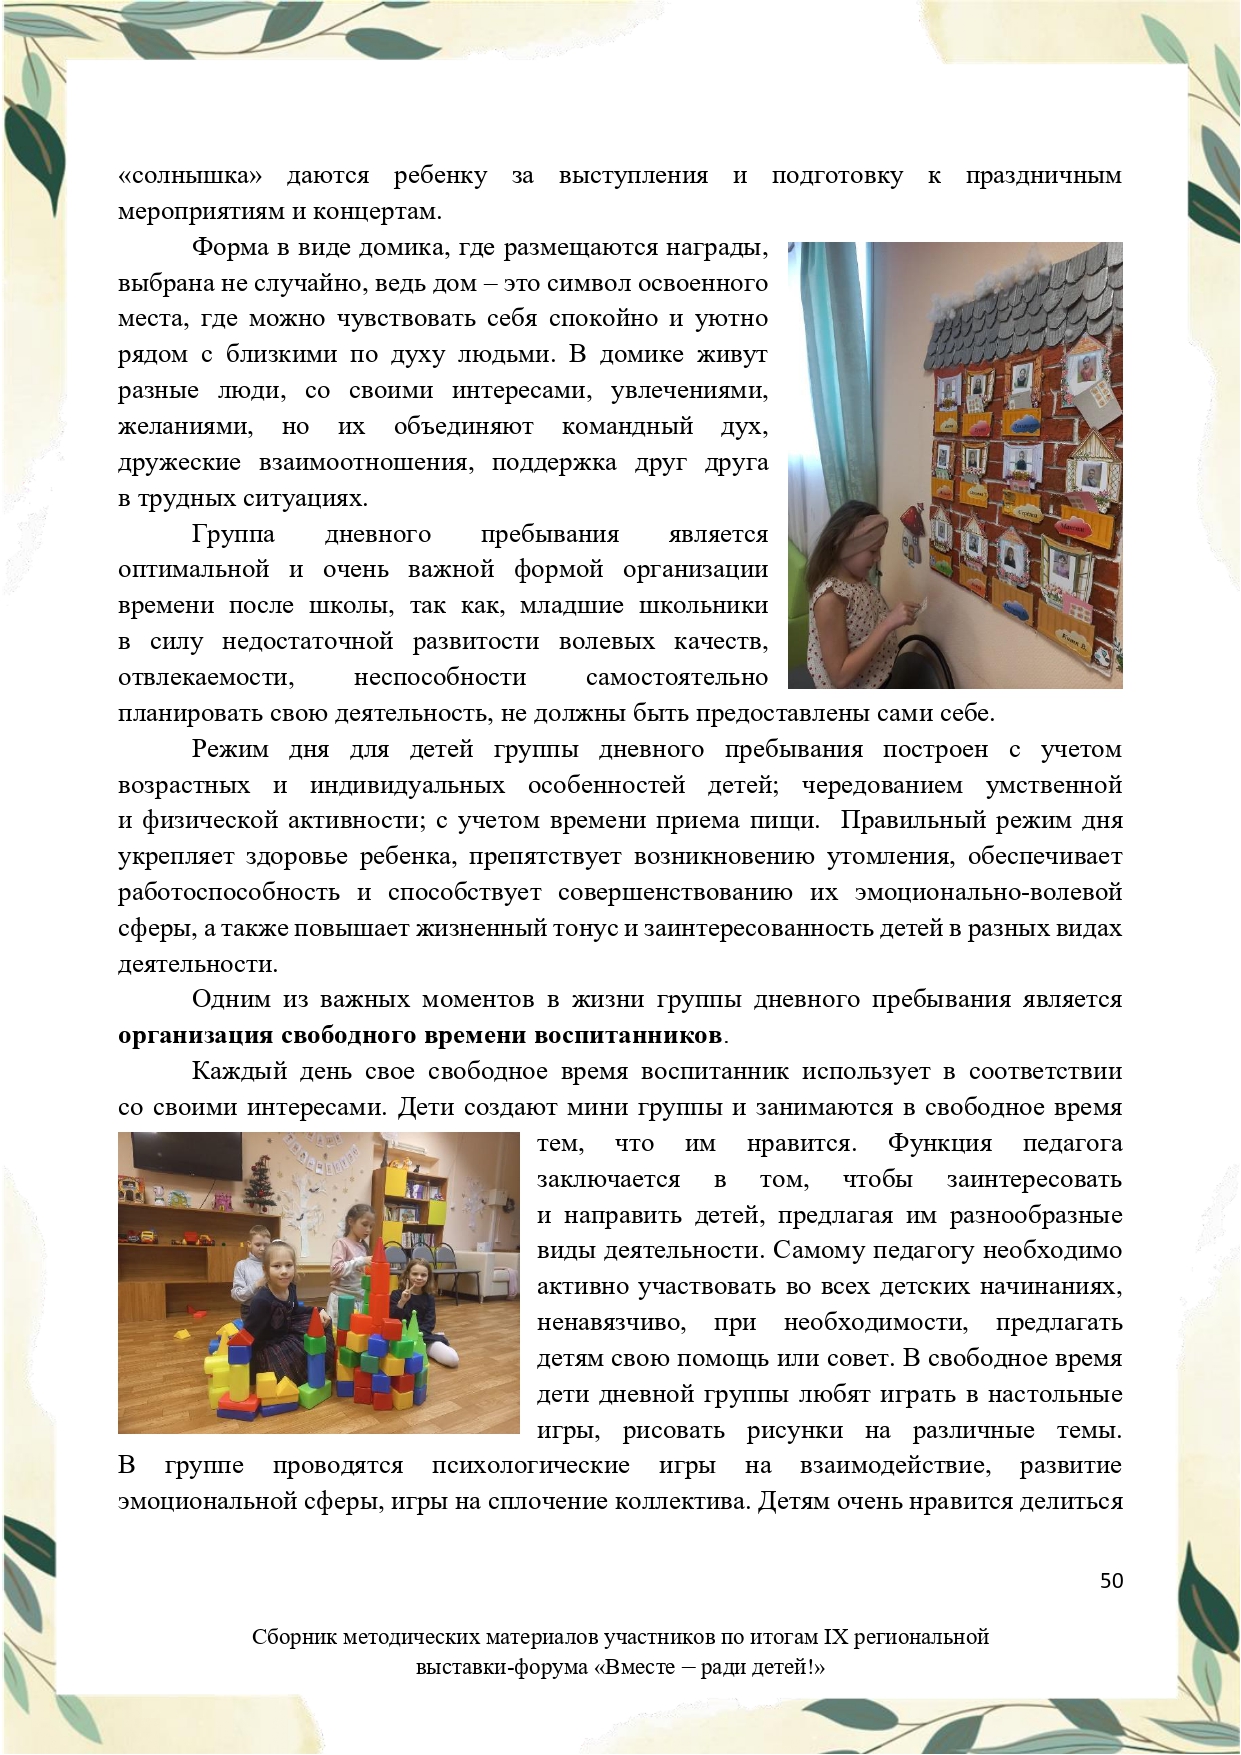 Sbornik_metodicheskikh_materialov_uchastnikov_IX_regionalnoy_vystavki-foruma_Vmeste__radi_detey_33__2023_page-0050